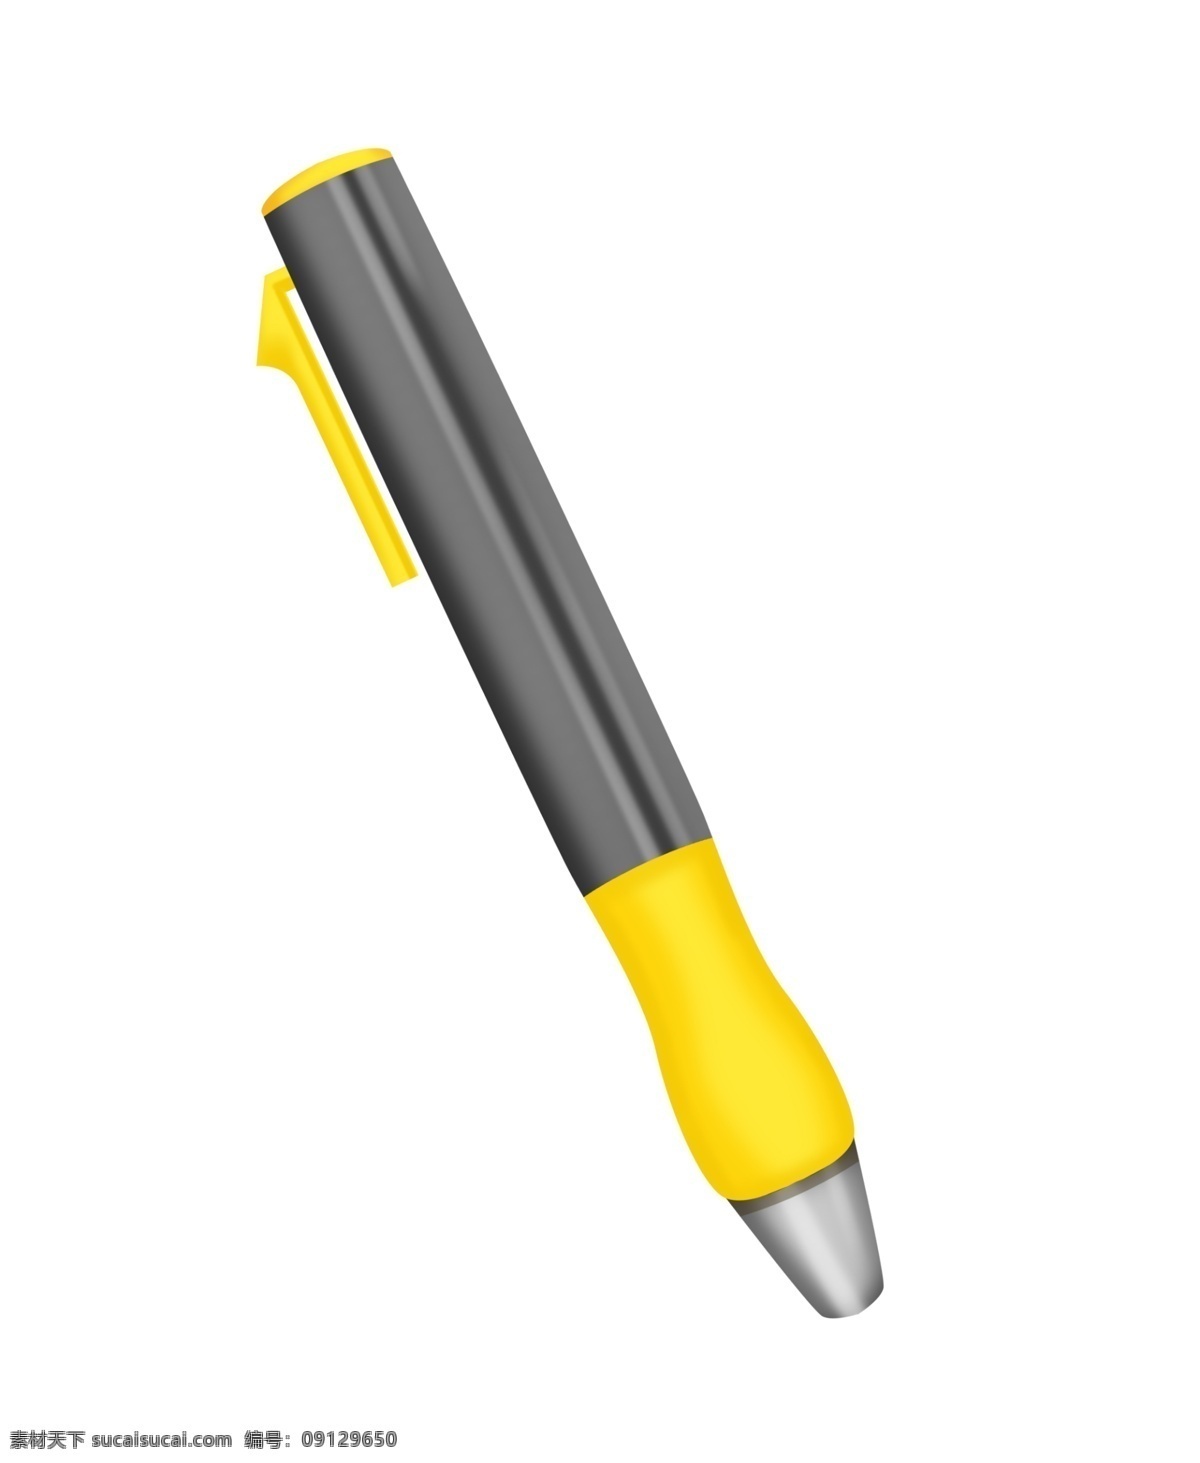 灰黄色 钢笔 装饰 插画 灰黄色钢笔 漂亮的钢笔 钢笔装饰 钢笔插画 立体钢笔 学习钢笔 文具钢笔